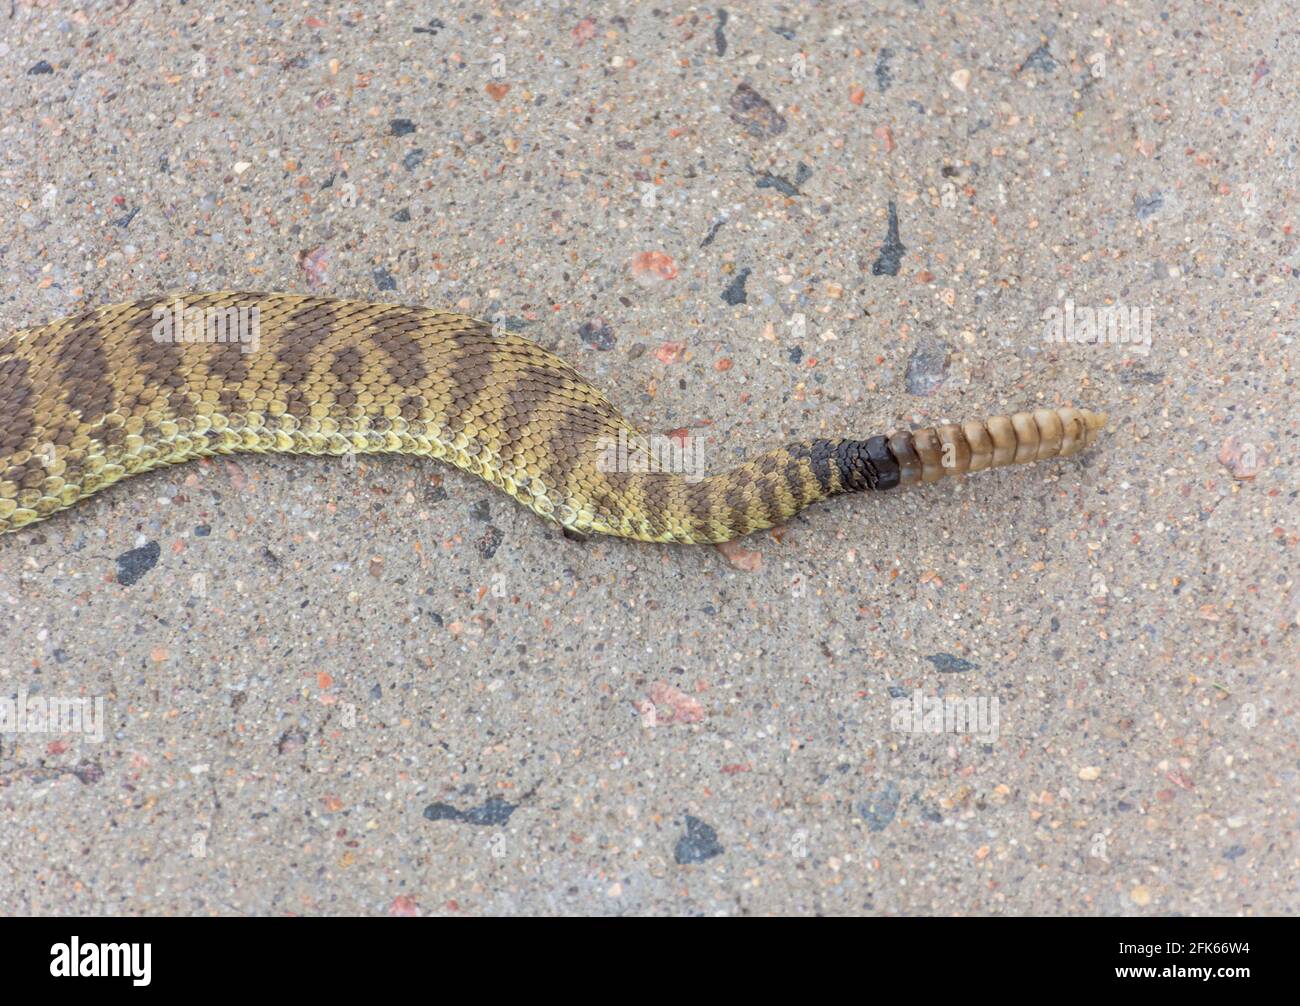 Primo piano dettaglio della coda di Prairie Rattlesnake (Crotalus viridis) che mostra sonaglino, scale e colorazione, Castle Rock Colorado USA. Foto scattata nel mese di agosto. Foto Stock